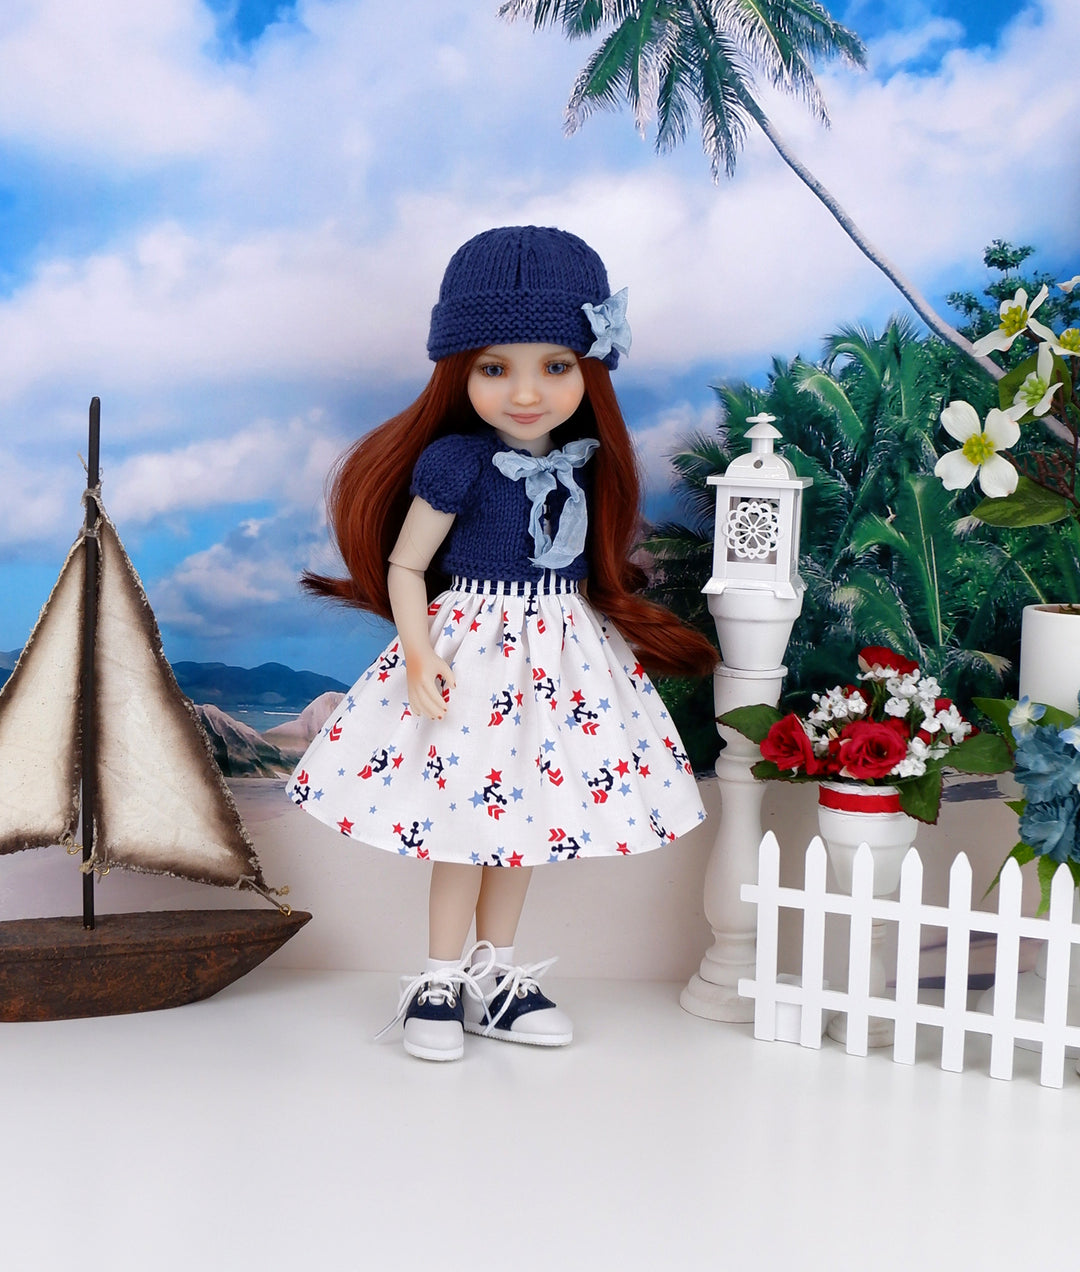 Saylor - custom nautical theme Ruby Red Fashion Friend doll & wardrobe